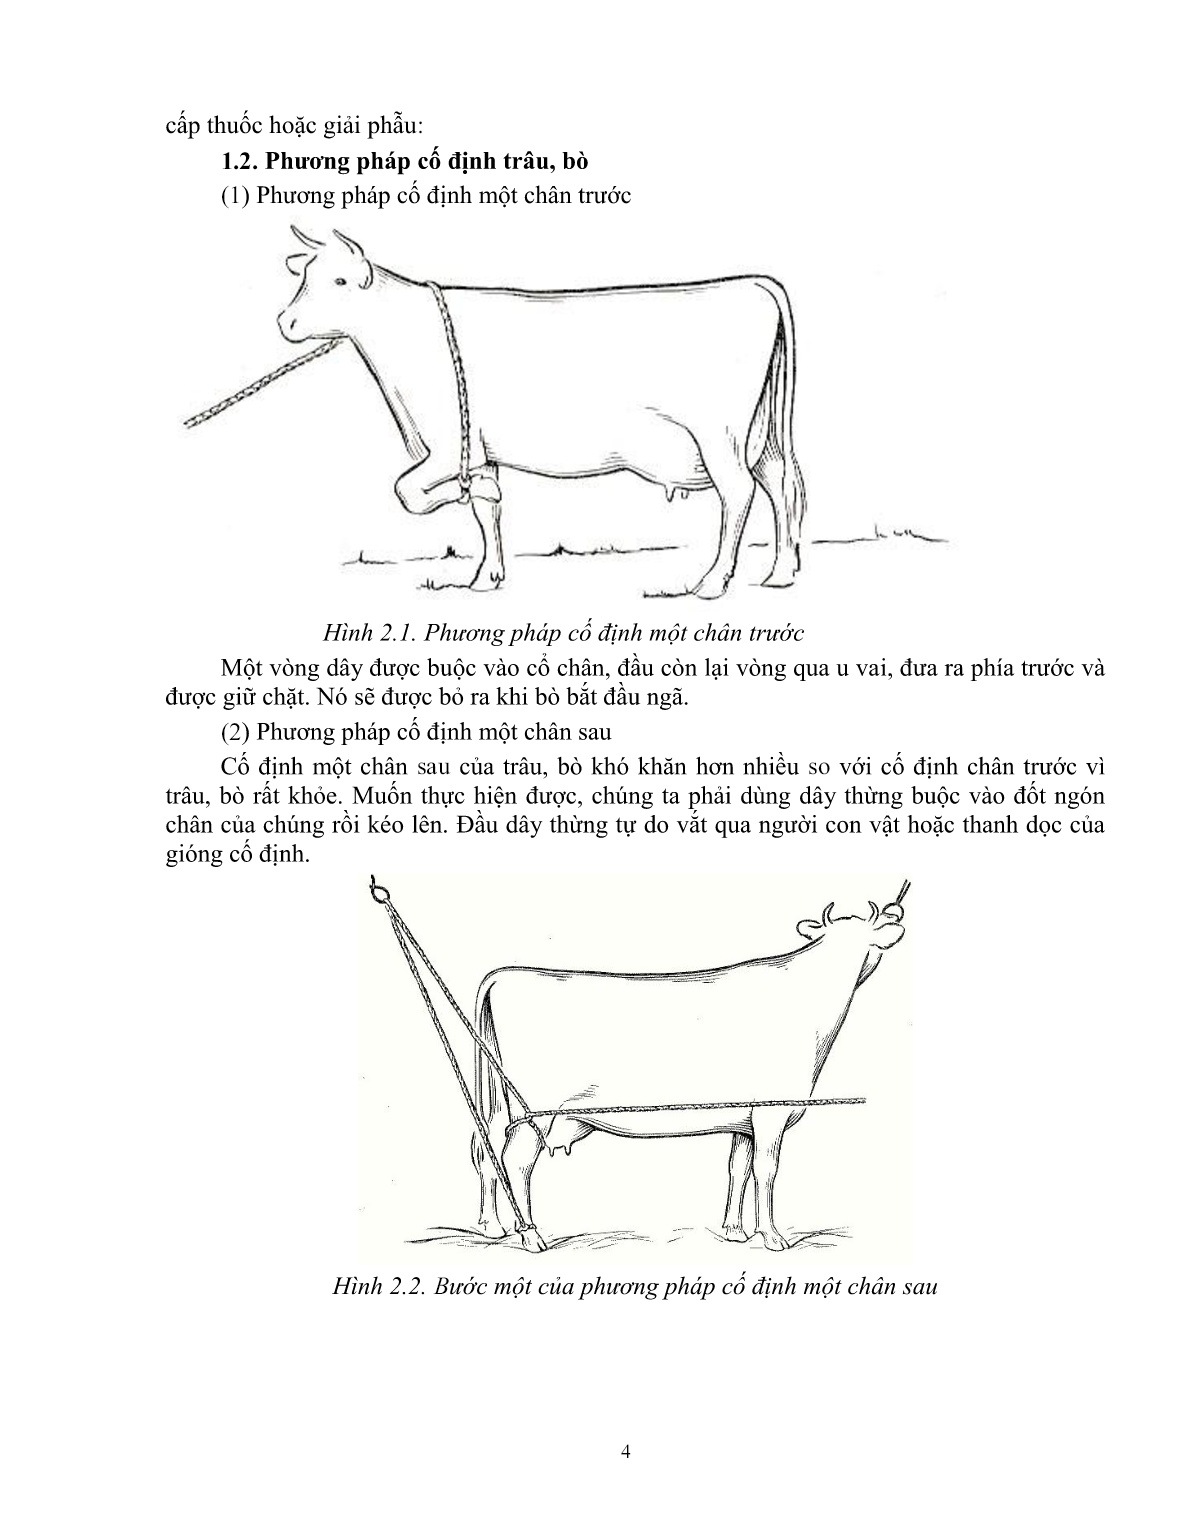 Giáo trình Kỹ thuật thực hành chăn nuôi – thú y áp dụng cho trâu, bò (Trình độ: Đào tạo dưới 3 tháng) trang 5